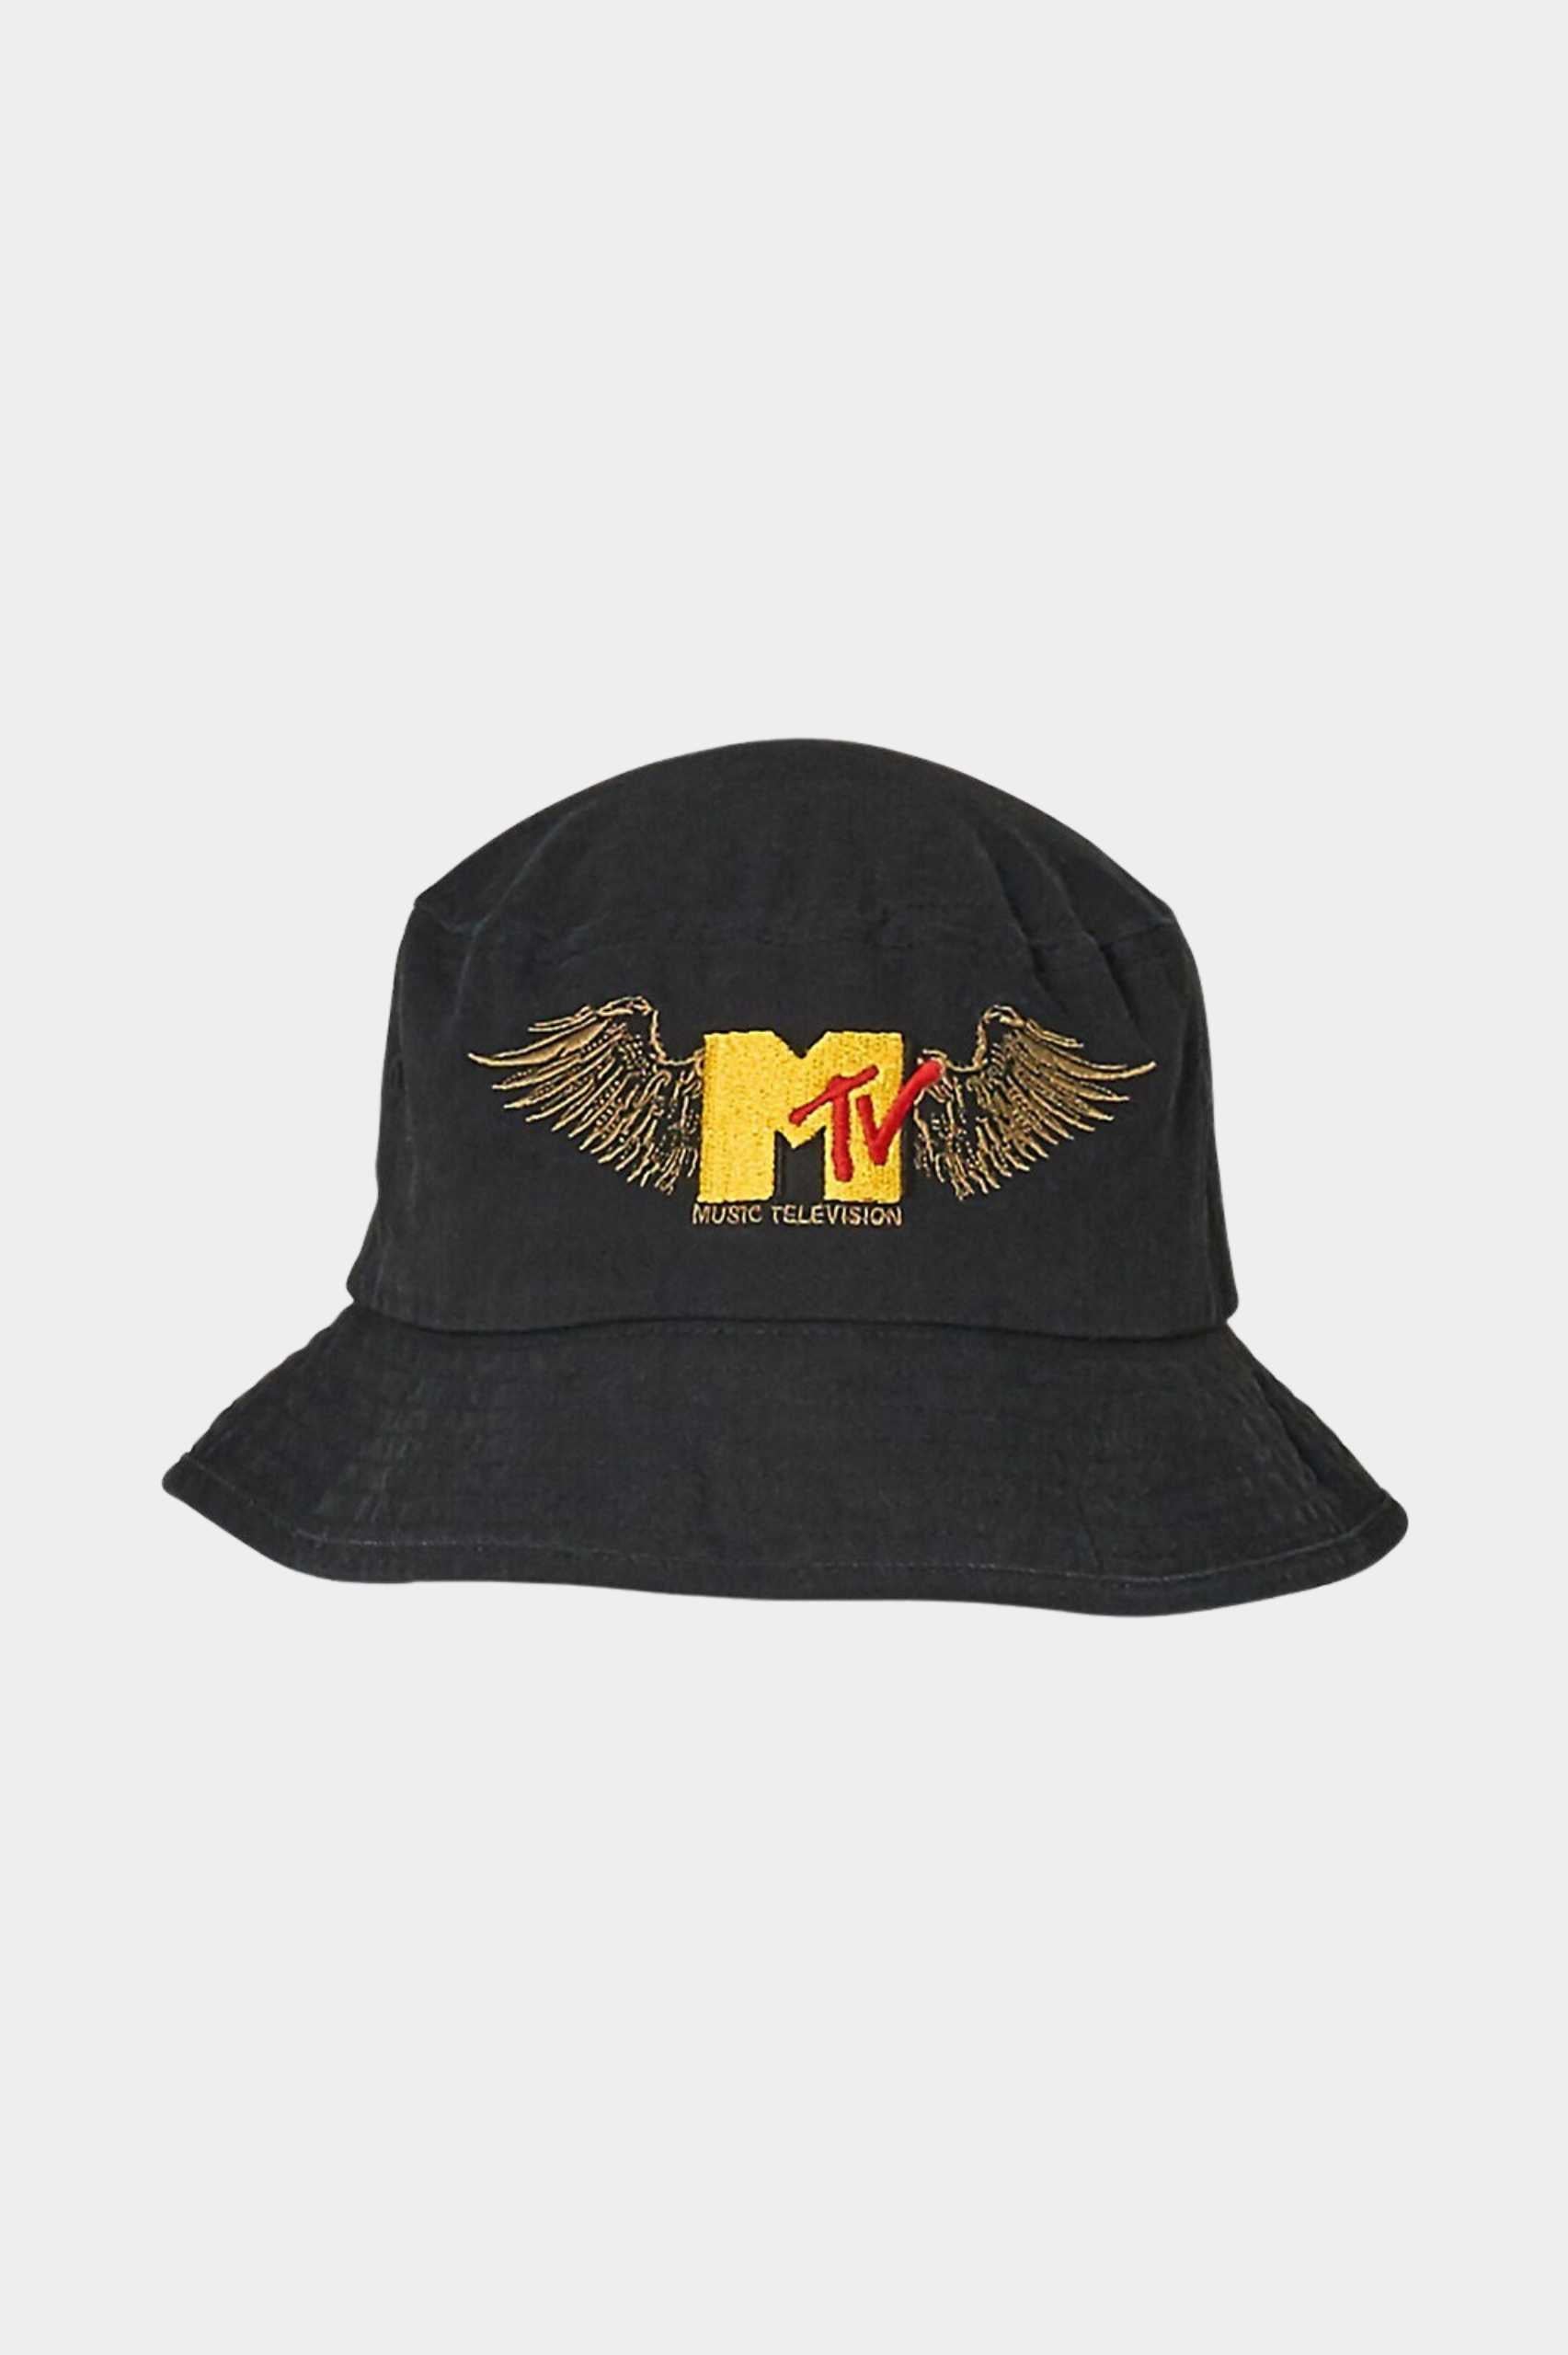 Rolla's x MTV Wings Bucket Hat